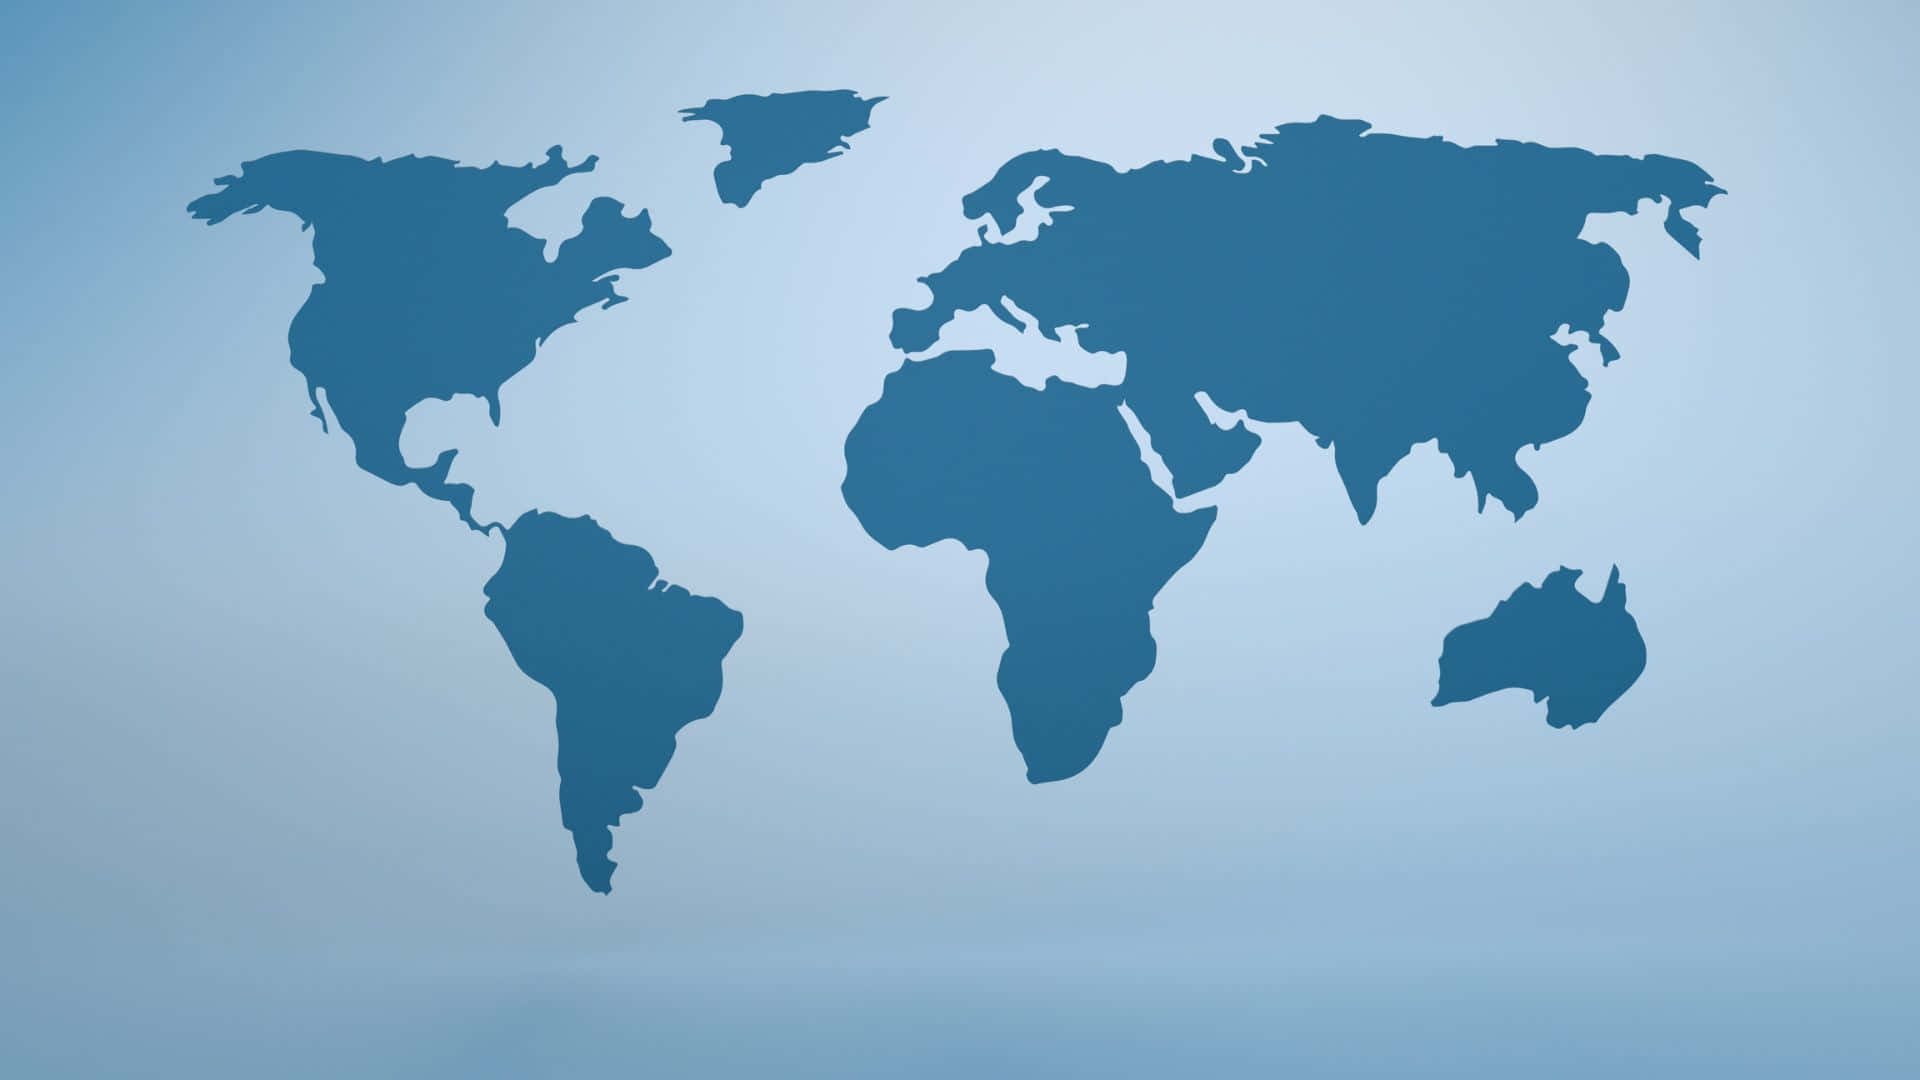 Fondode Pantalla Con Silueta De Mapa Mundial Azul Simple.